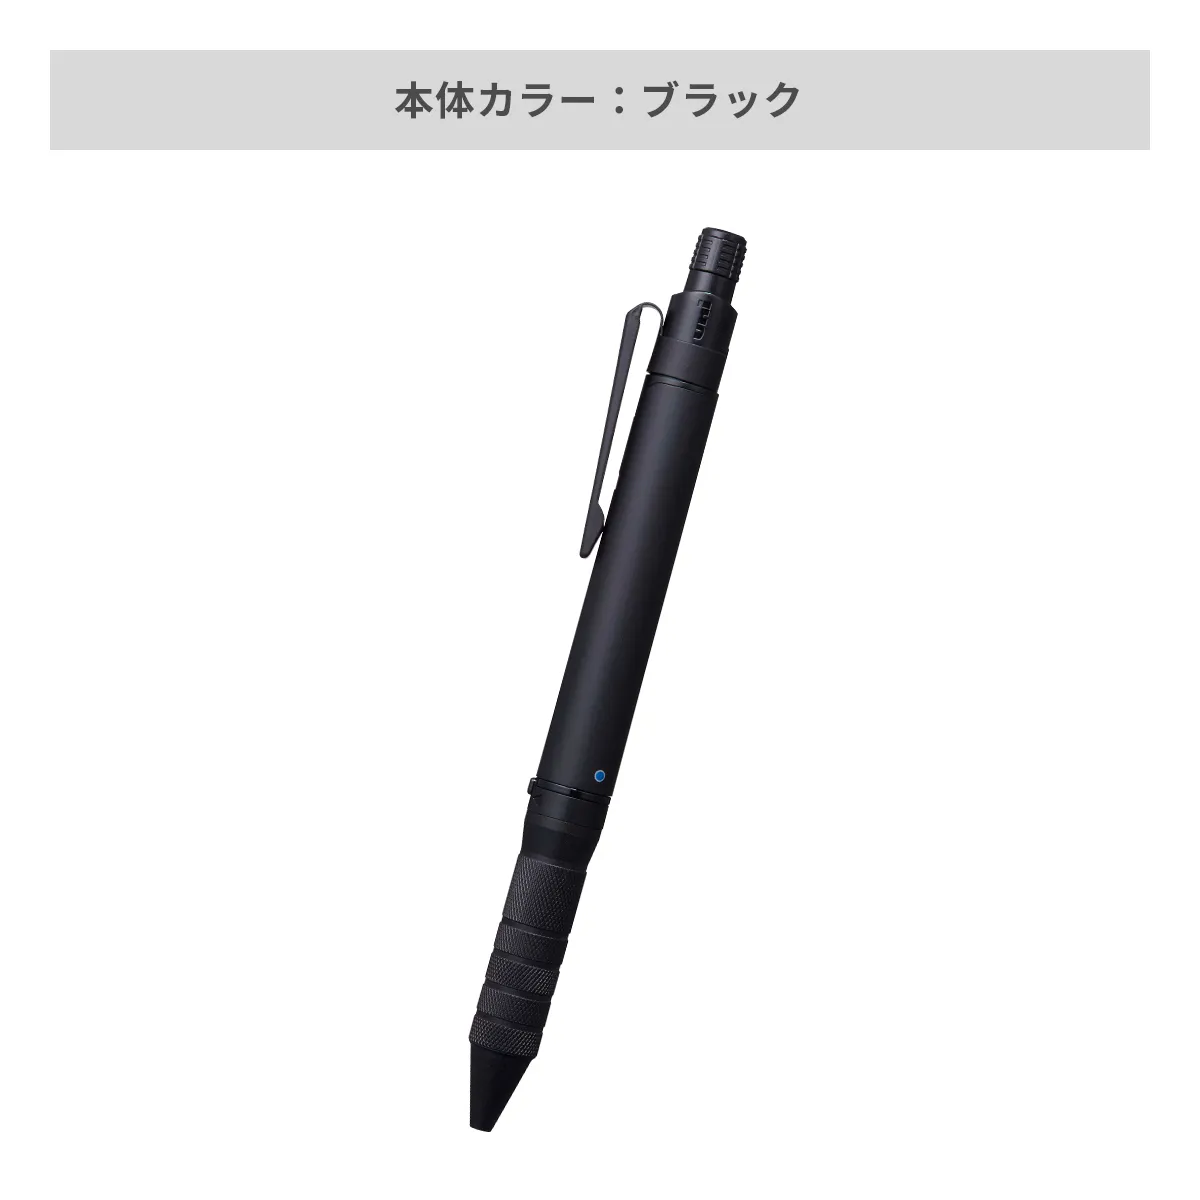 三菱鉛筆(uni) ユニボール アールイー3ビズ 0.5mm【名入れボールペン